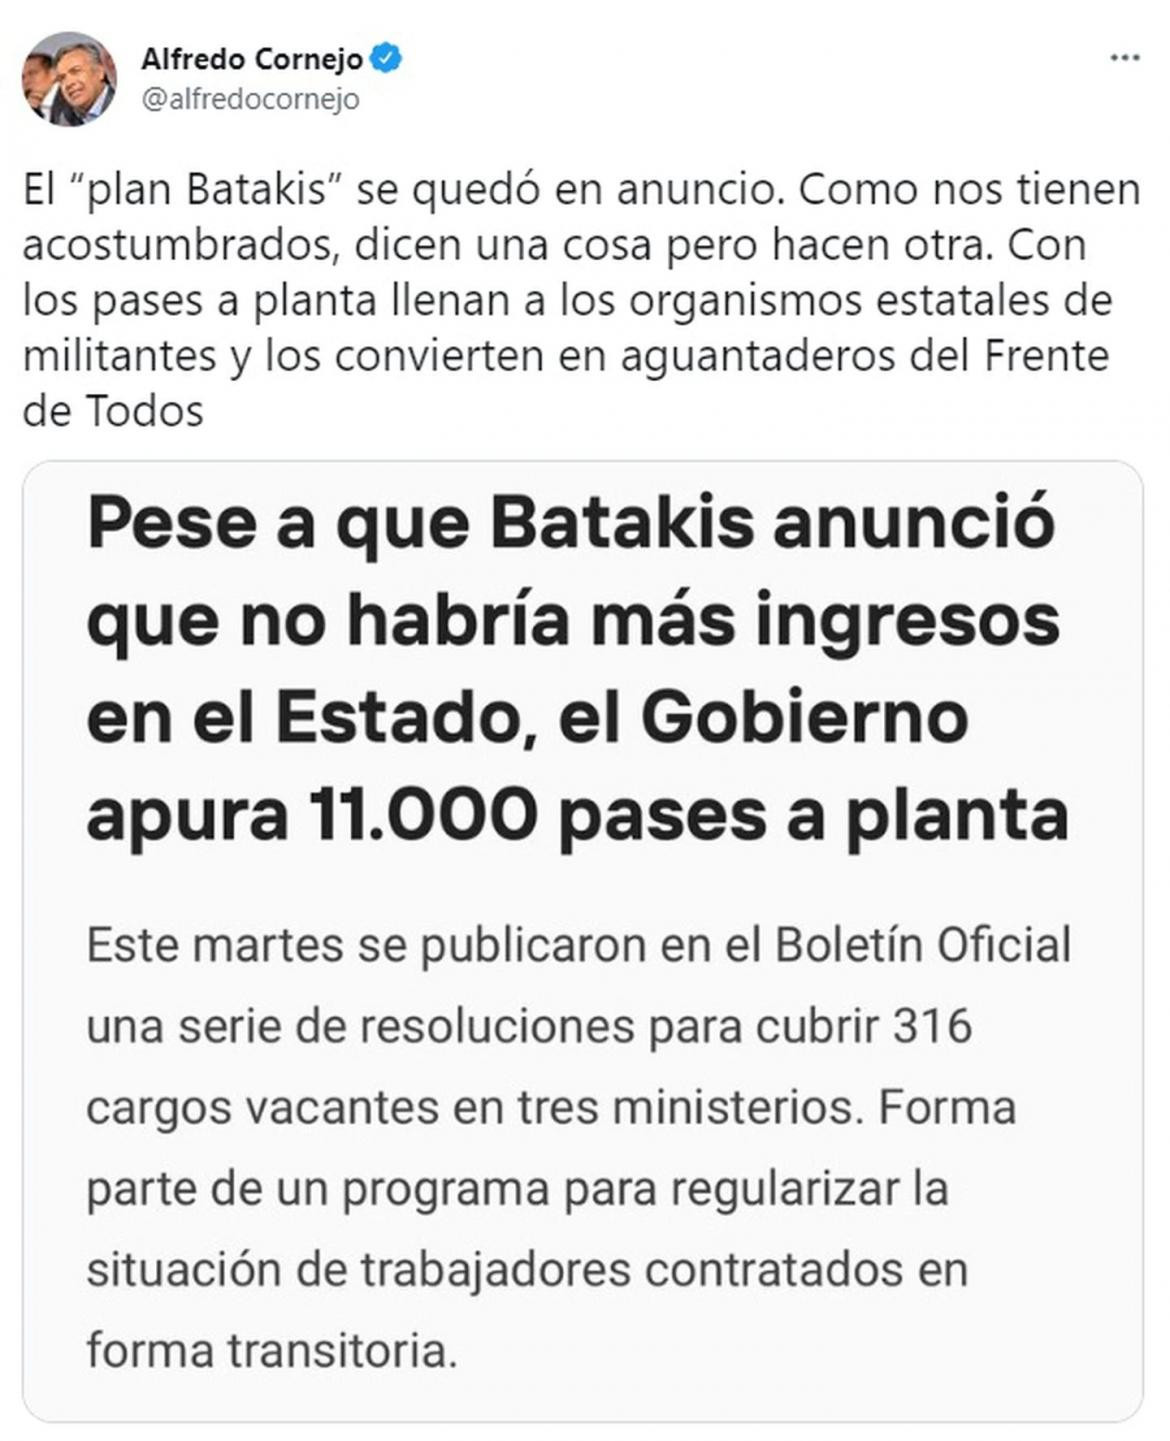 Alfredo Cornejo criticó la decisión del Gobierno de acelerar pases de planta transitoria a permanente (Foto: captura Twitter @alfredocornejo).